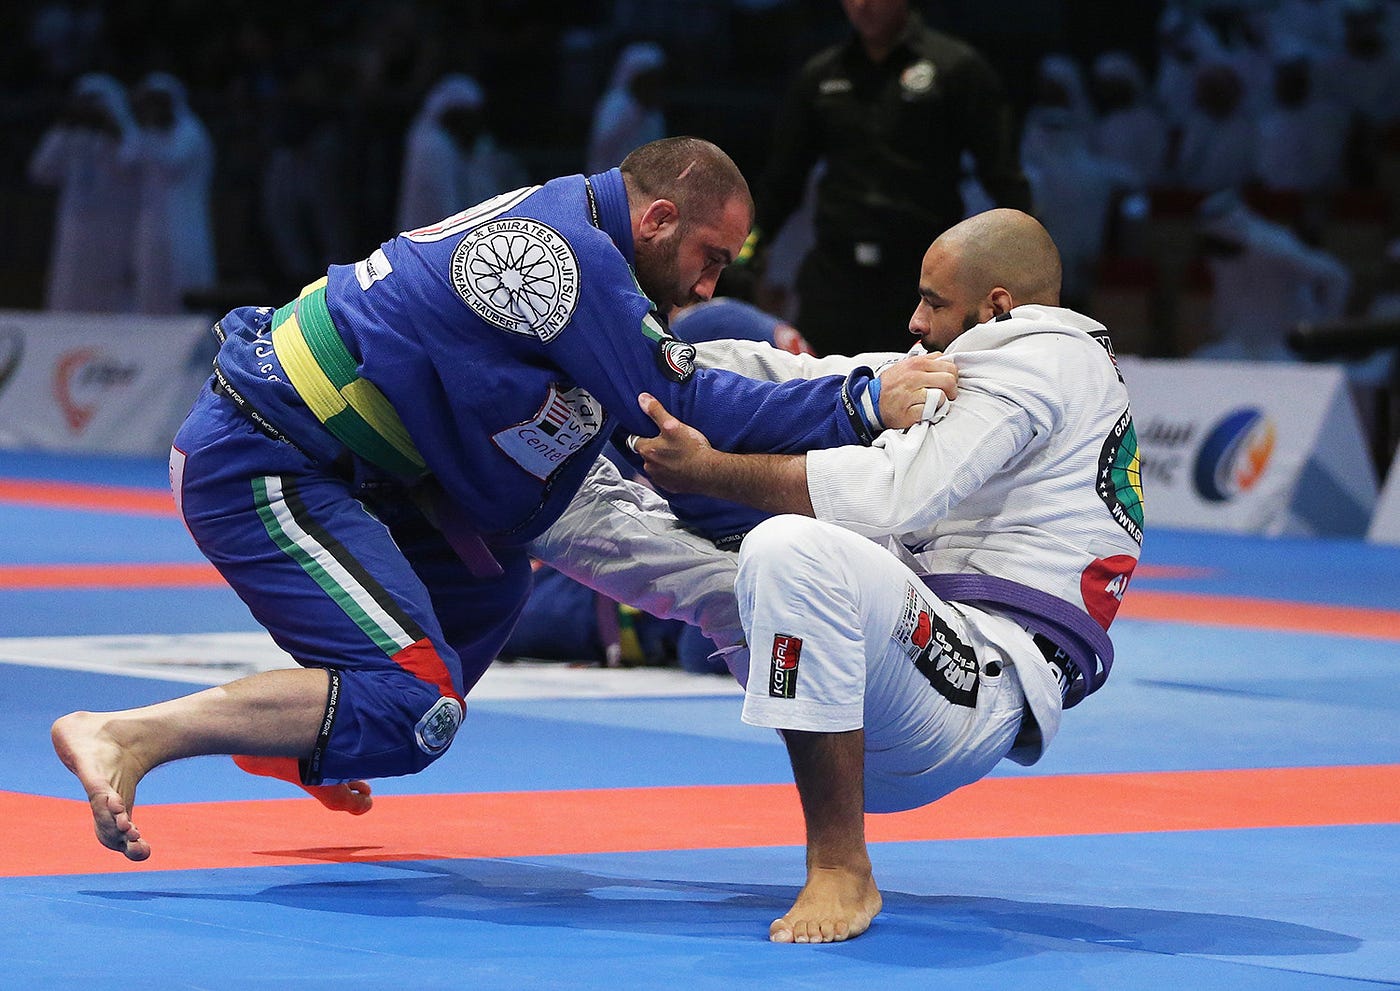 Jiu-Jitsu วิวัฒนาการจากการต่อสู้ สู่กีฬาที่ได้รับการยอมรับทั่วโลก